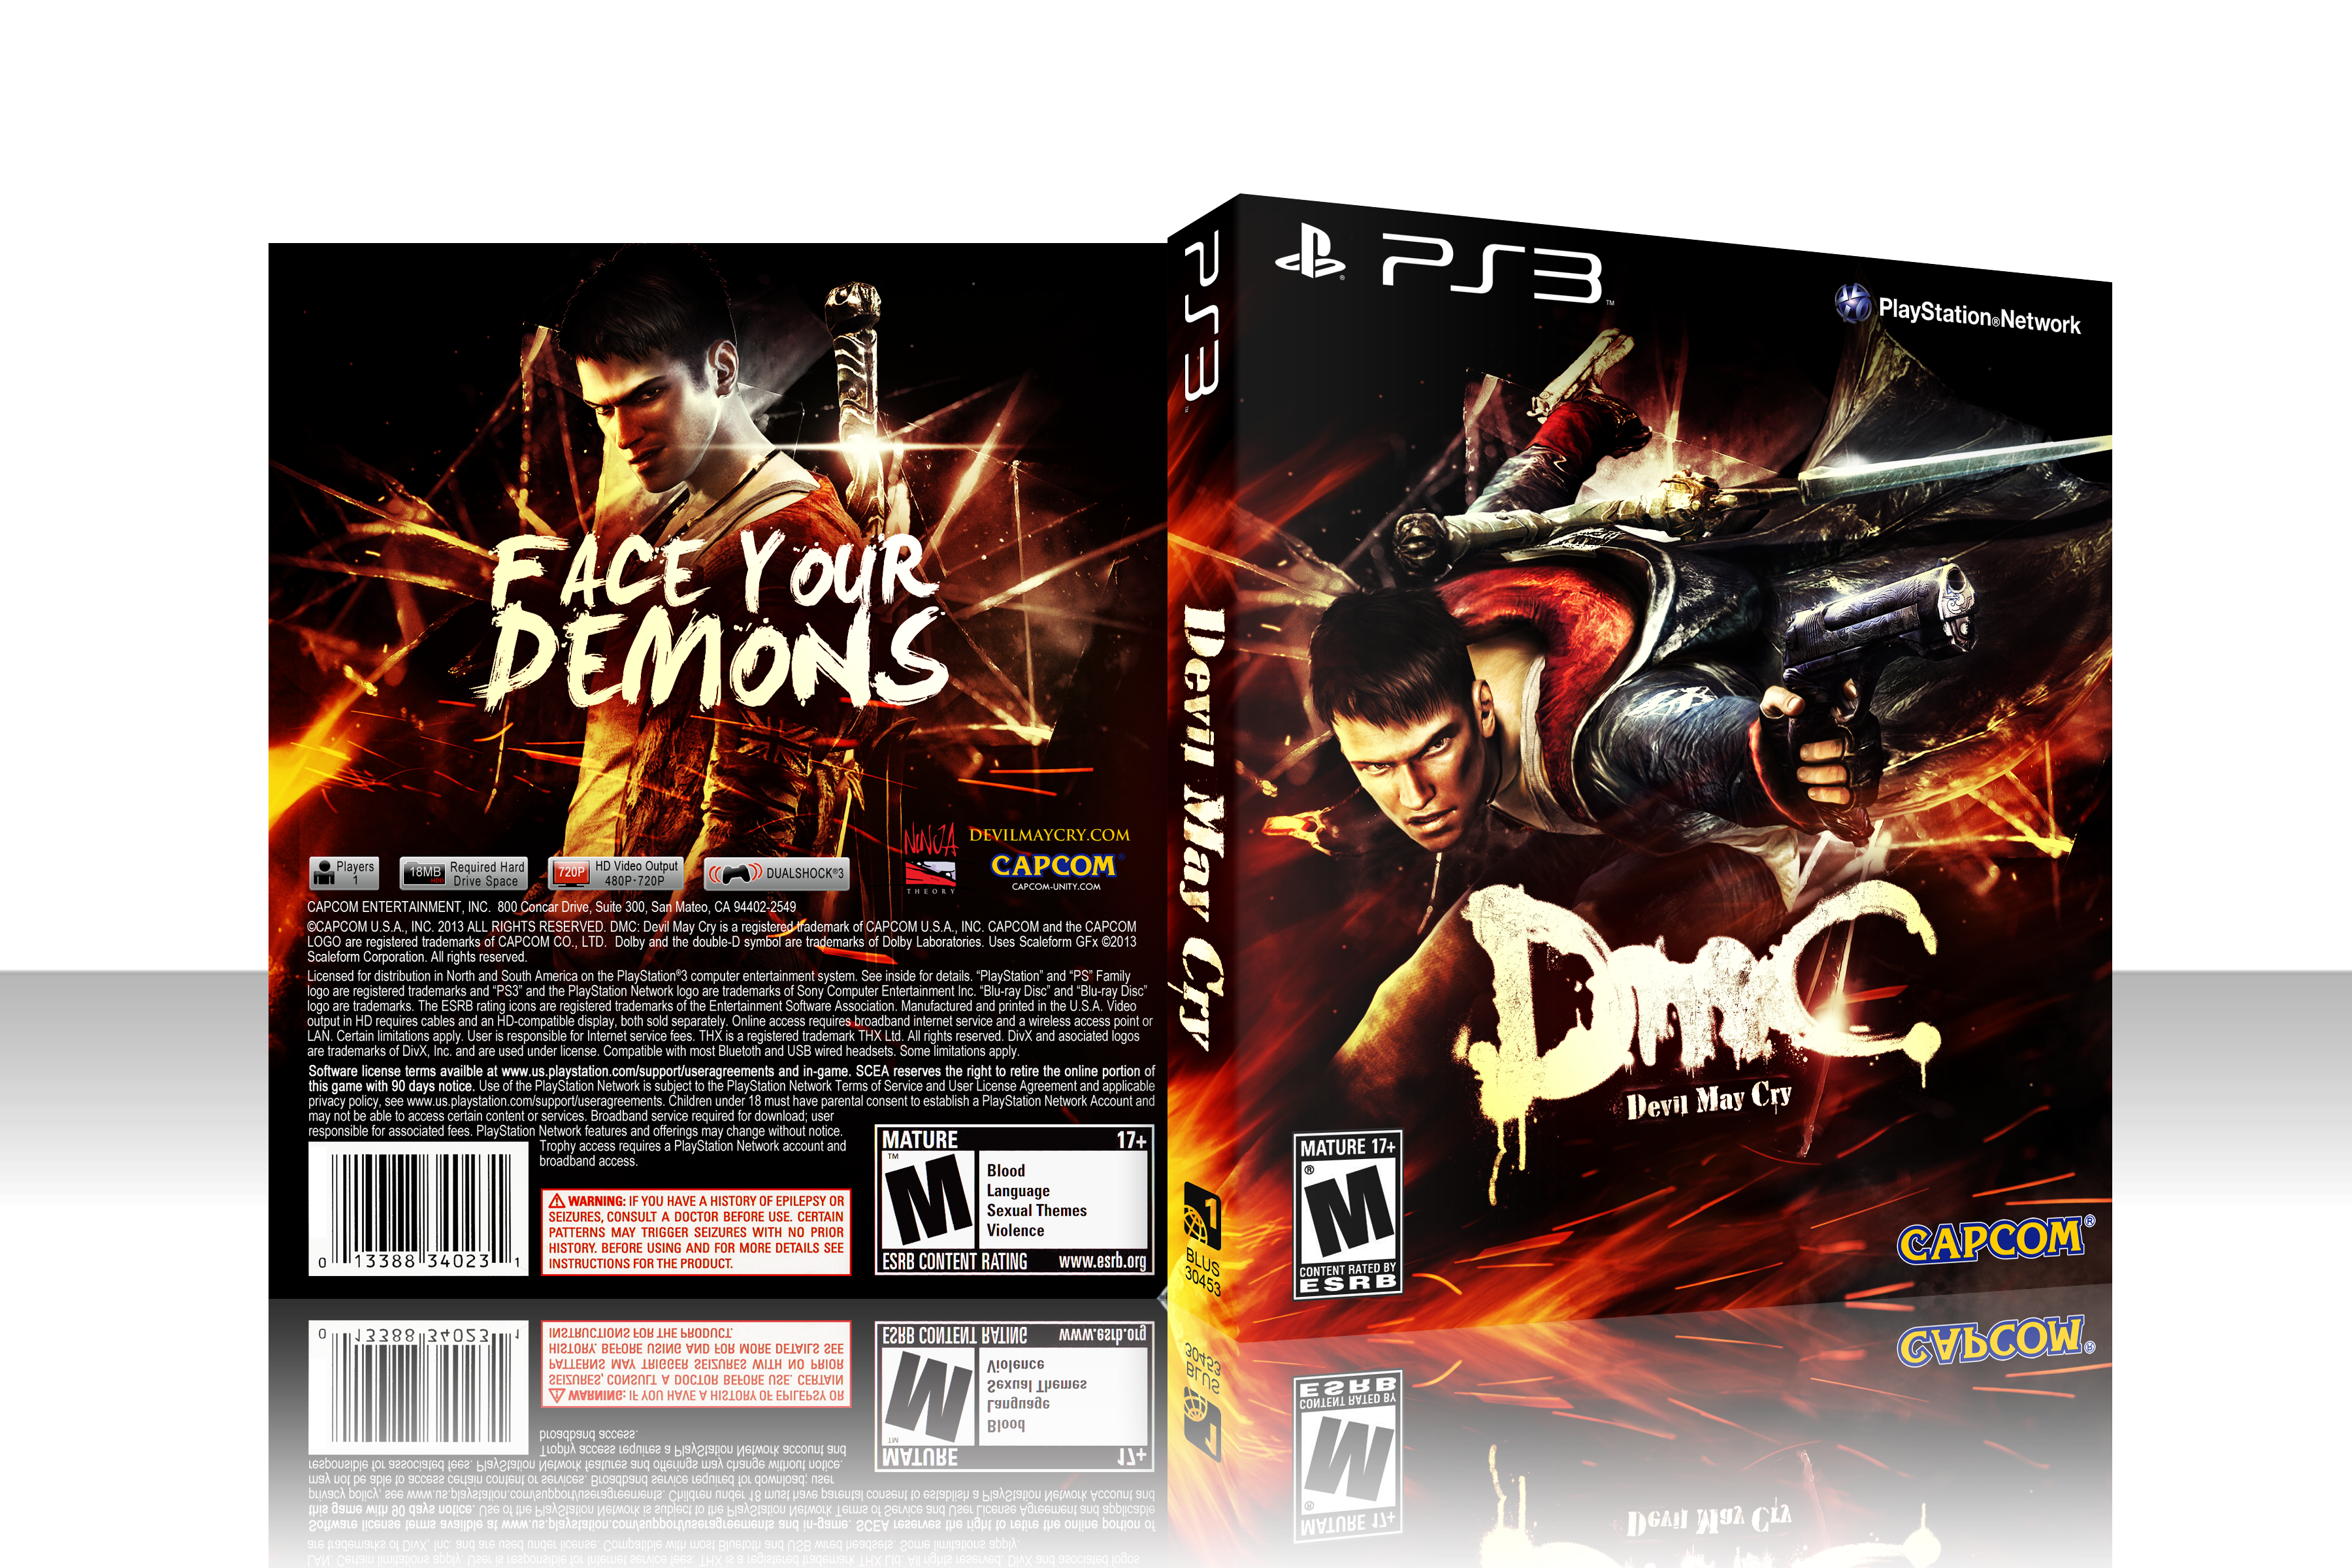 Devil May Cry 1 обложка. Devil May Cry 4 диск с игрой. DMC 3 пиратский диск. DMC Devil May Cry ps3 Cover. Dmc код